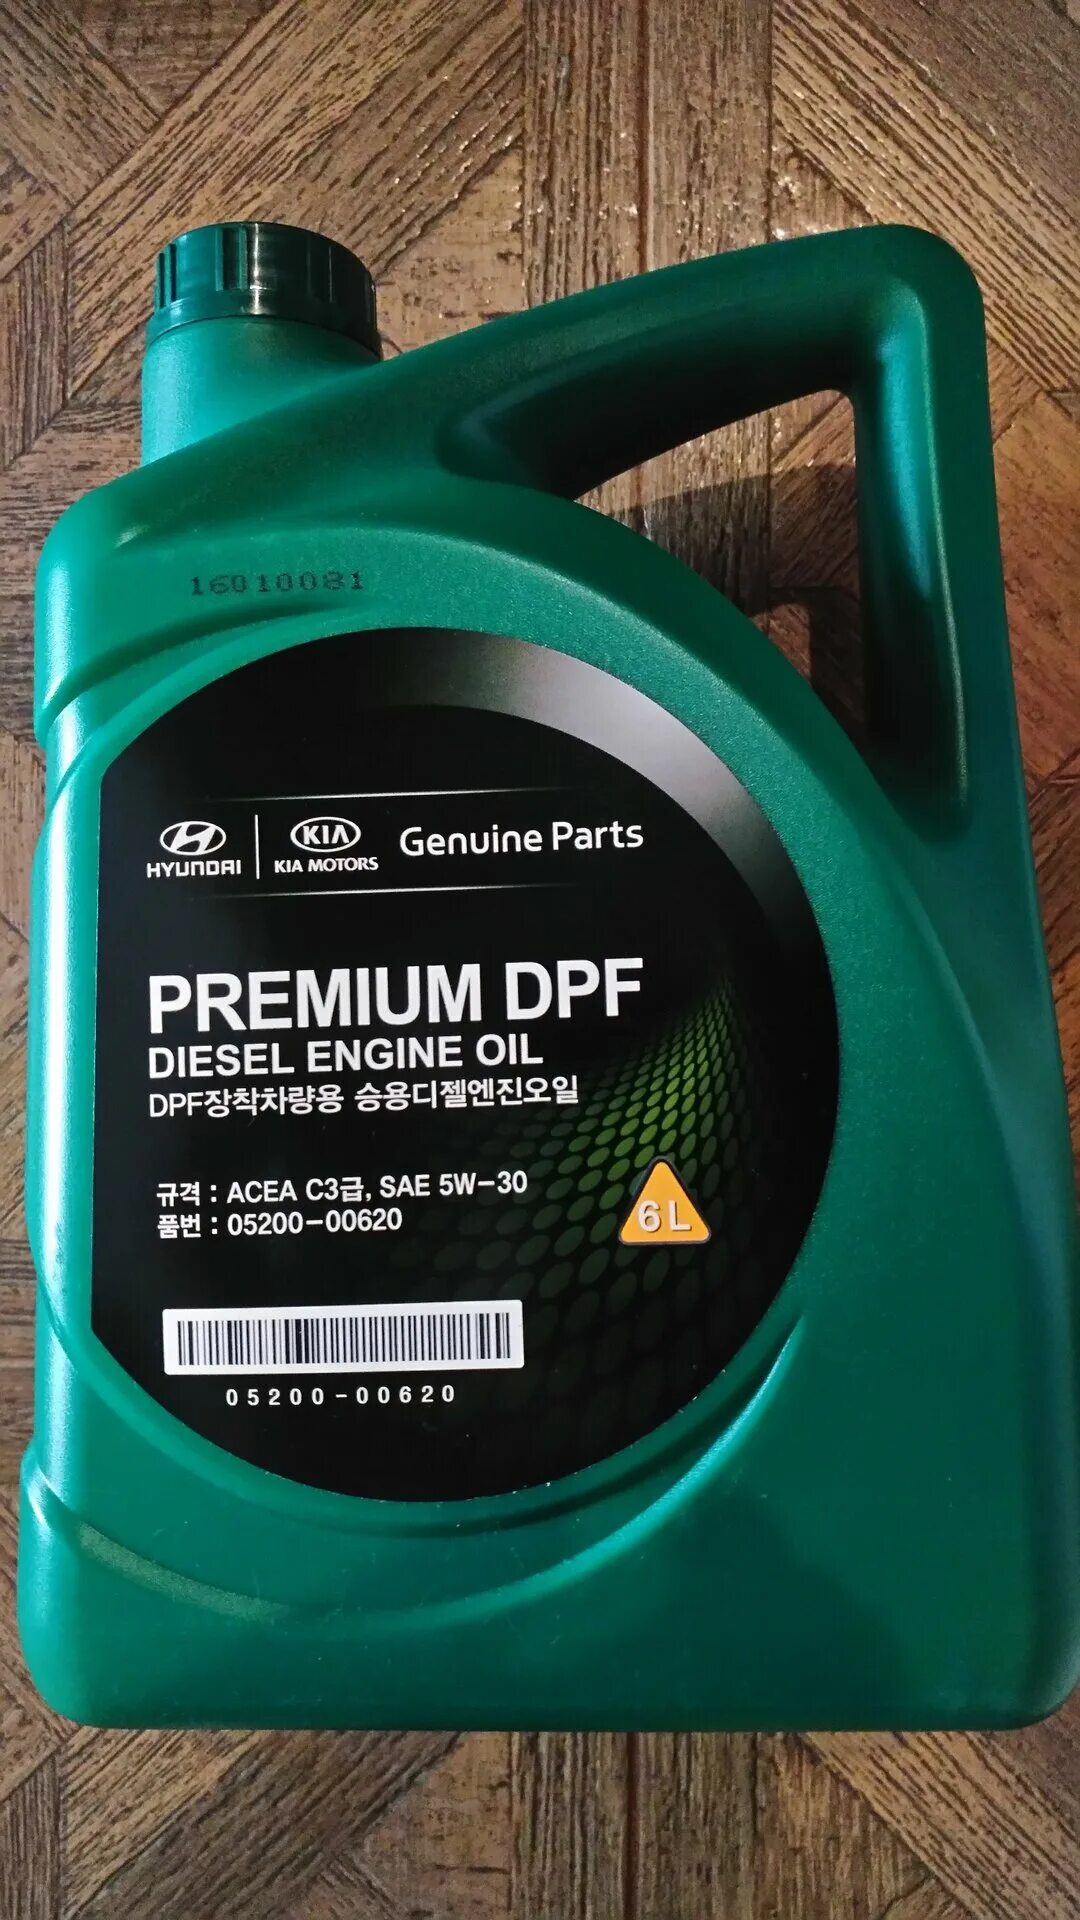 Premium DPF Diesel 5w-30. Масло mobis Premium DPF Diesel 5w-30. Hyundai Kia Premium DPF 5w-30 6 л. Mobis Premium DPF Diesel 5w-30, 6 n. Масло kia premium dpf diesel